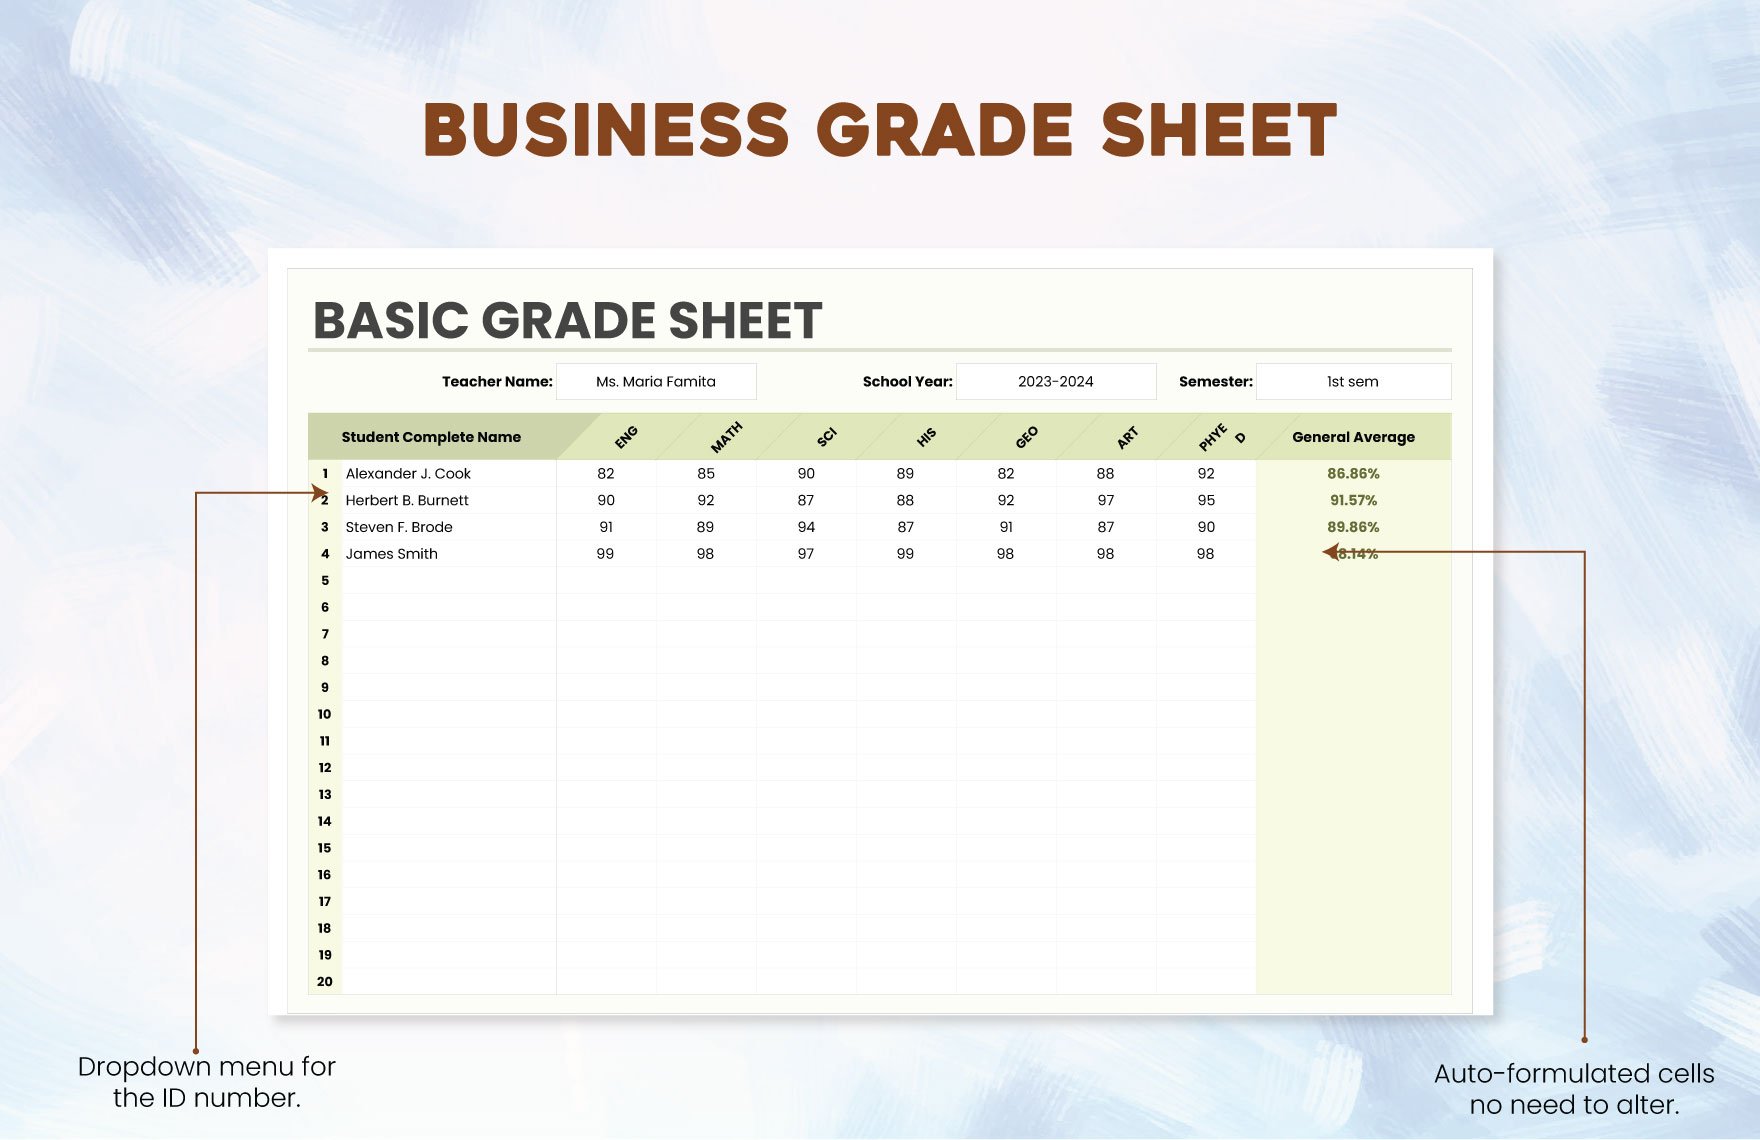 Basic Grade Sheet Template